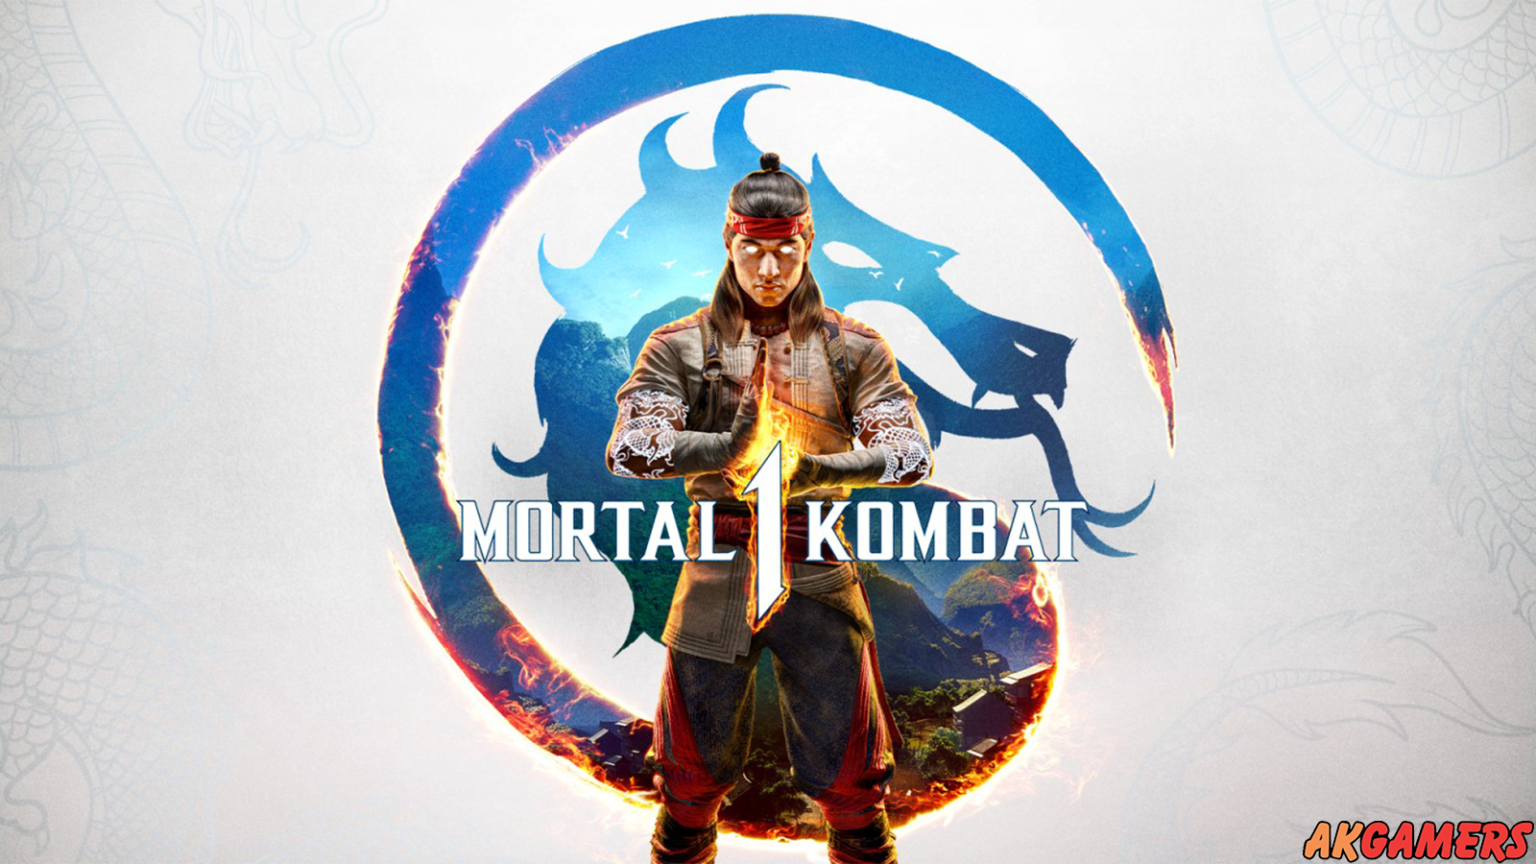 Mortal Kombat games